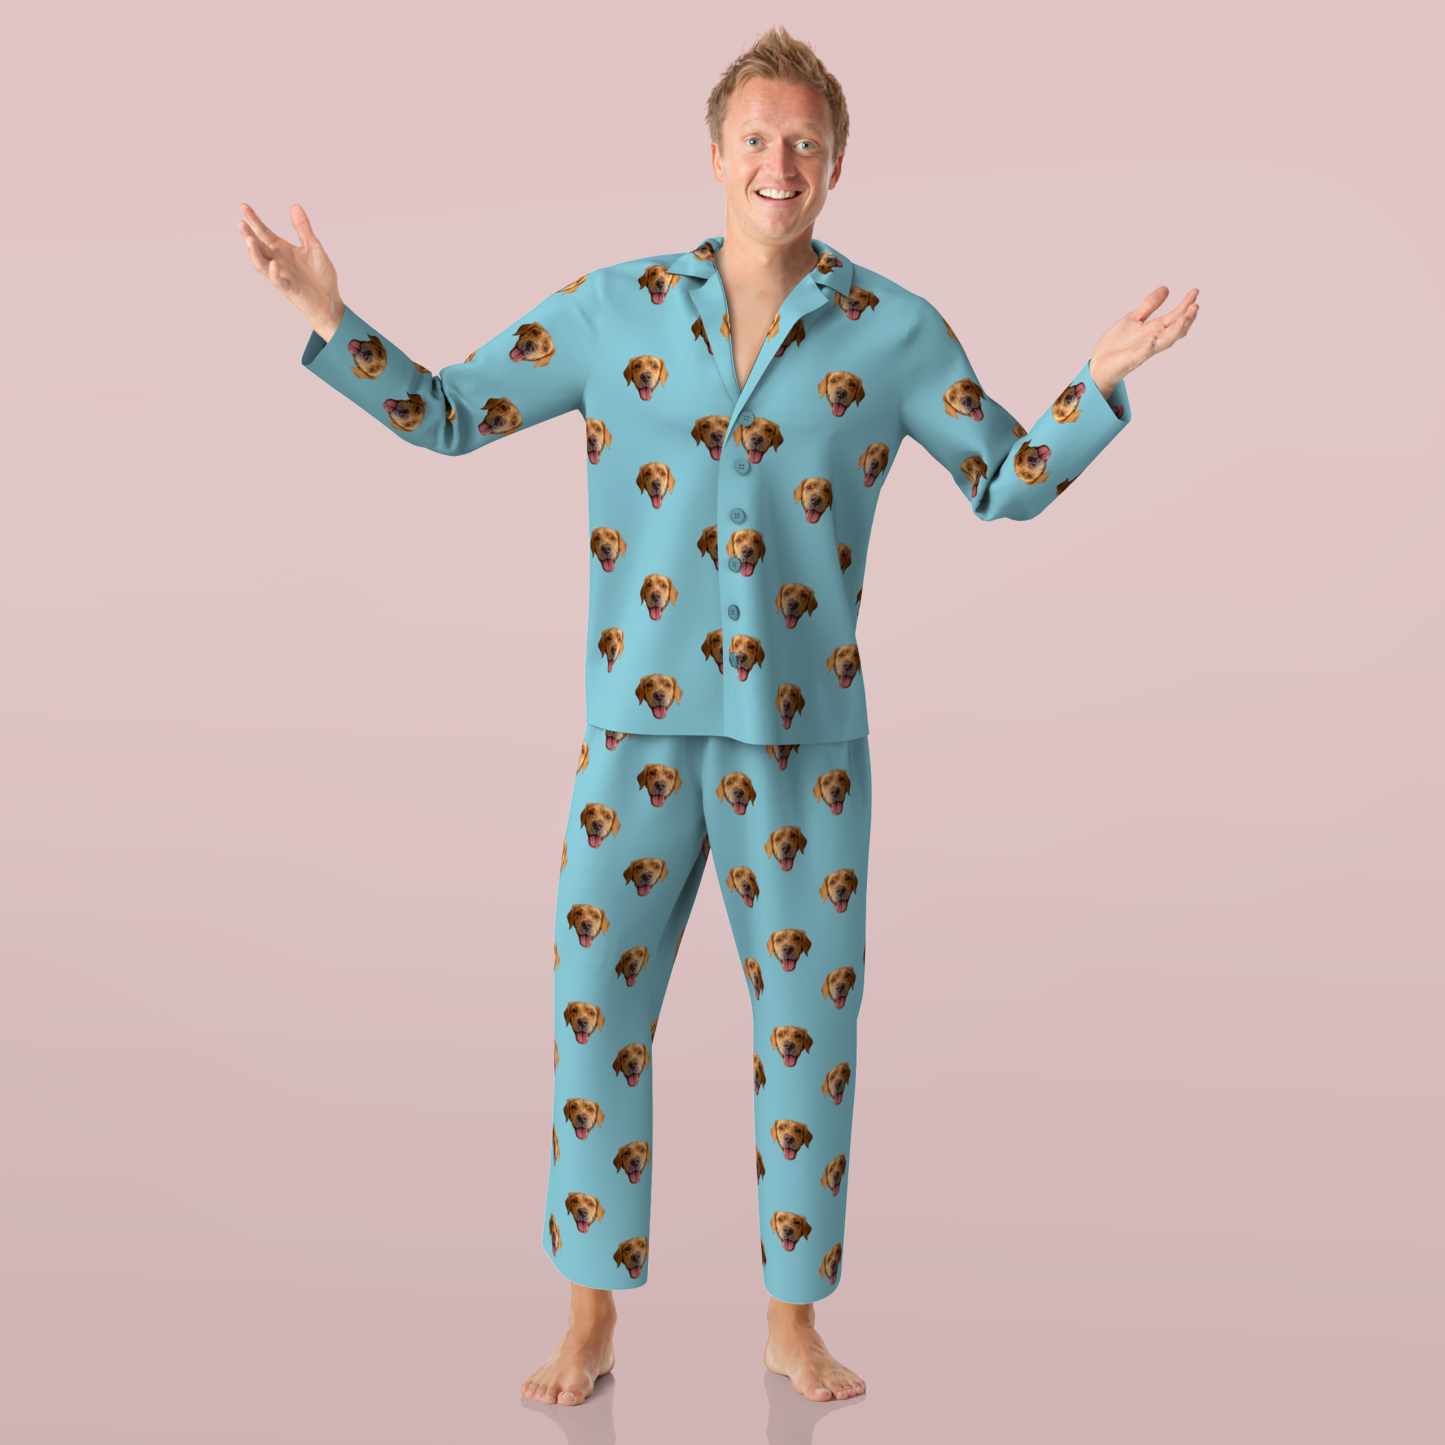 Pyjama Photo Visage Personnalisé Vêtements De Nuit Manches Longues Cadeaux Grands-parents Colorés - VisageChaussettes